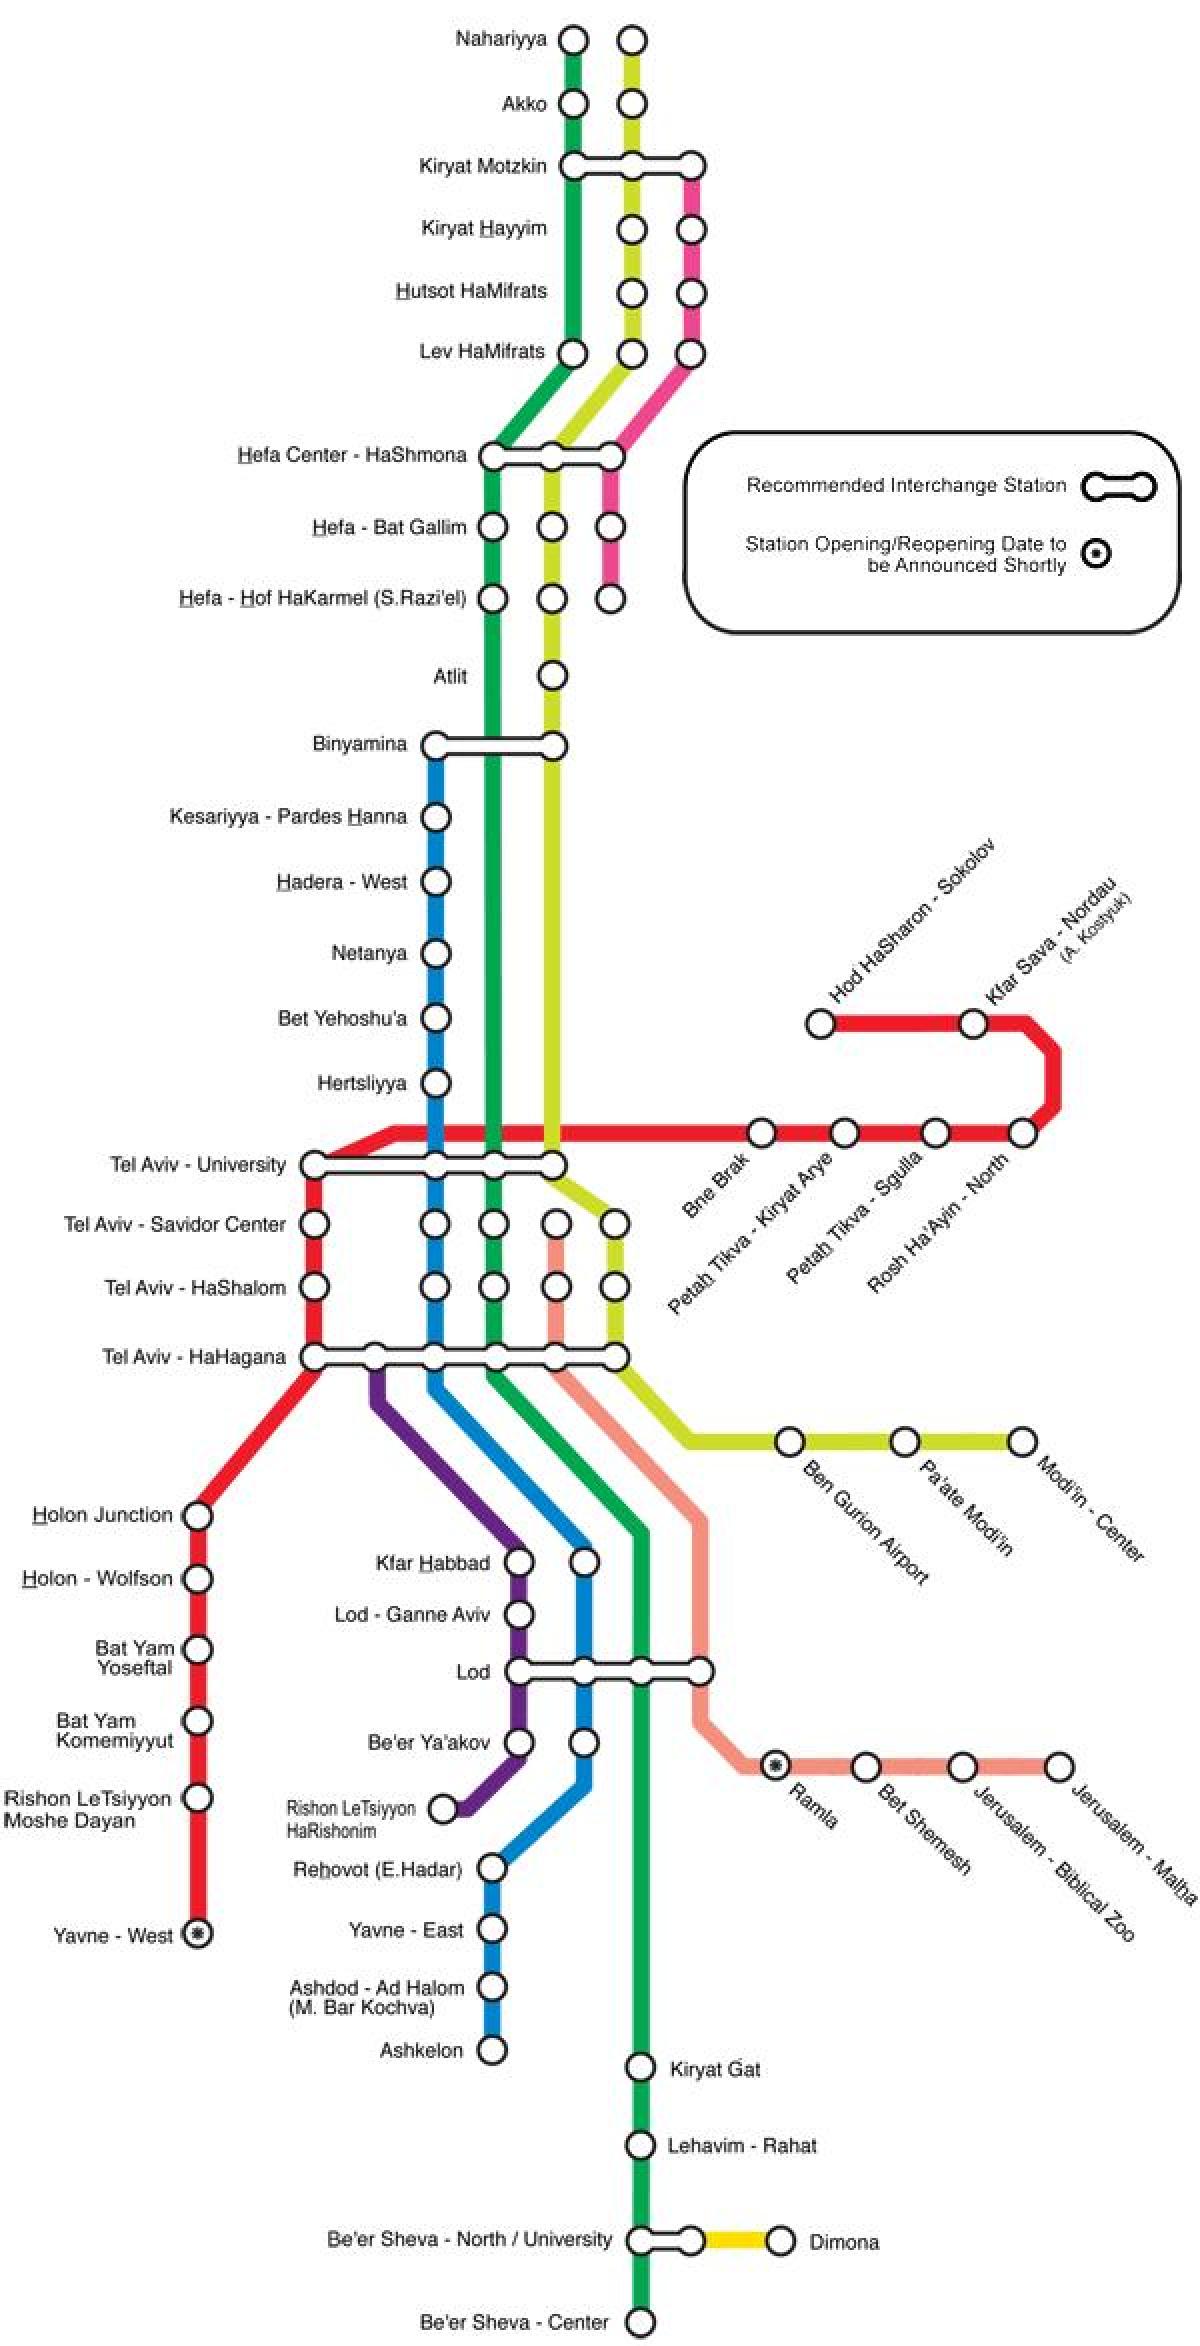 تل ابیب کے ریلوے اسٹیشن کا نقشہ